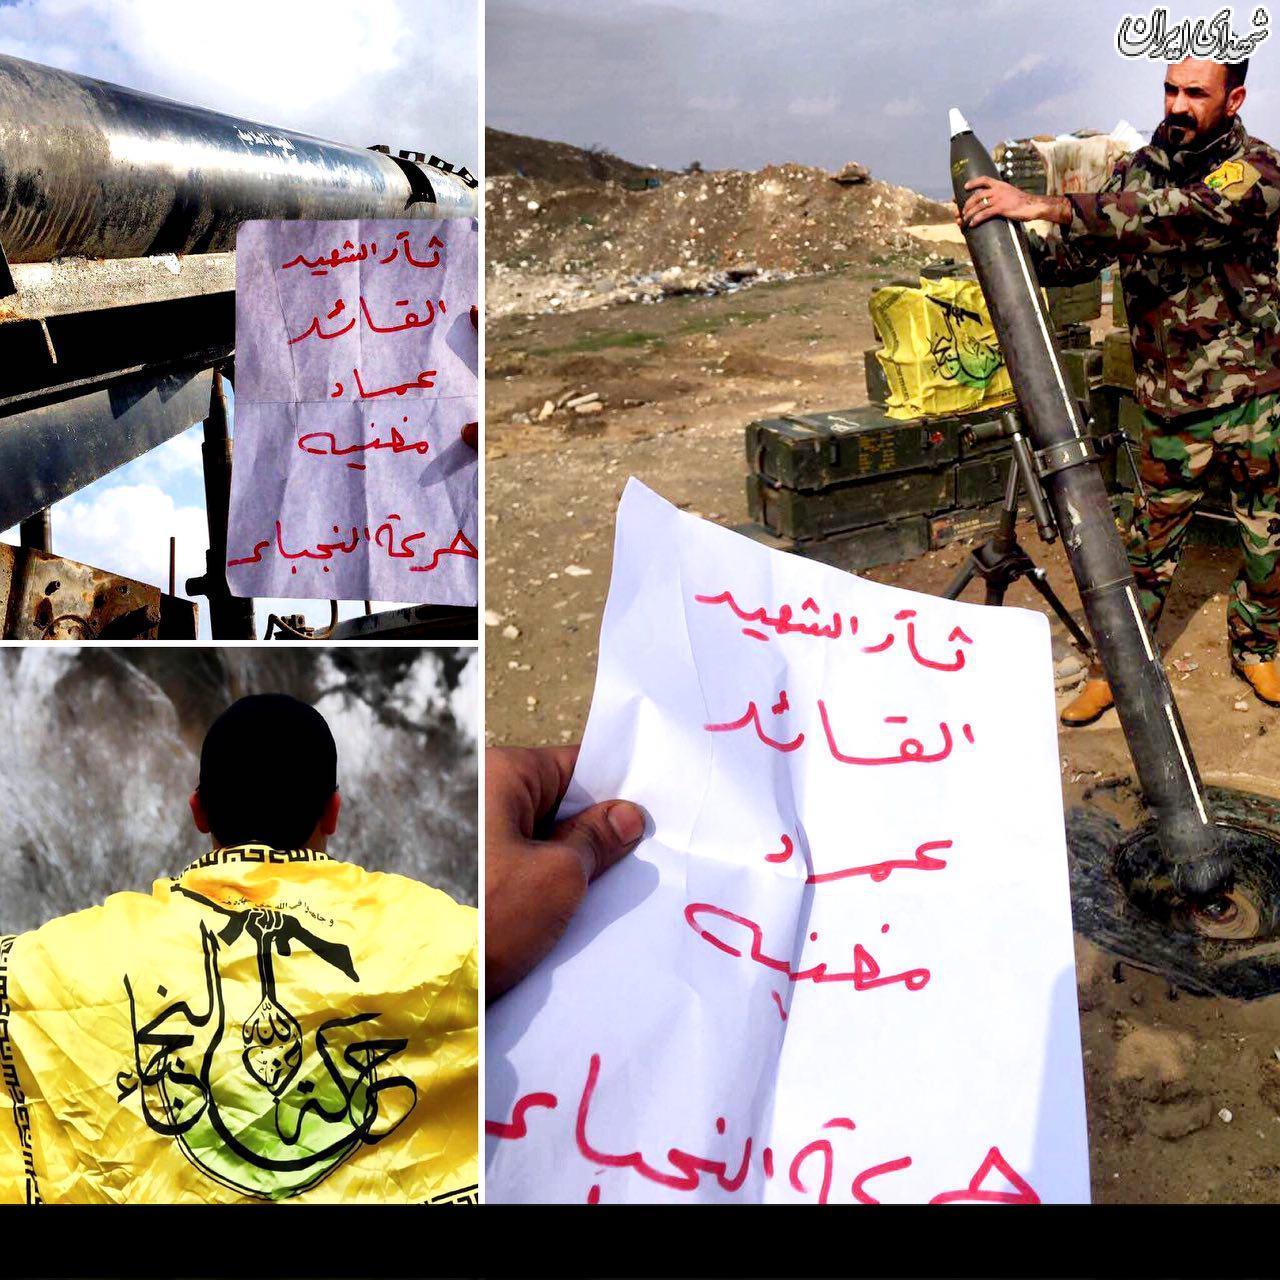 موشکباران داعش با رمز 